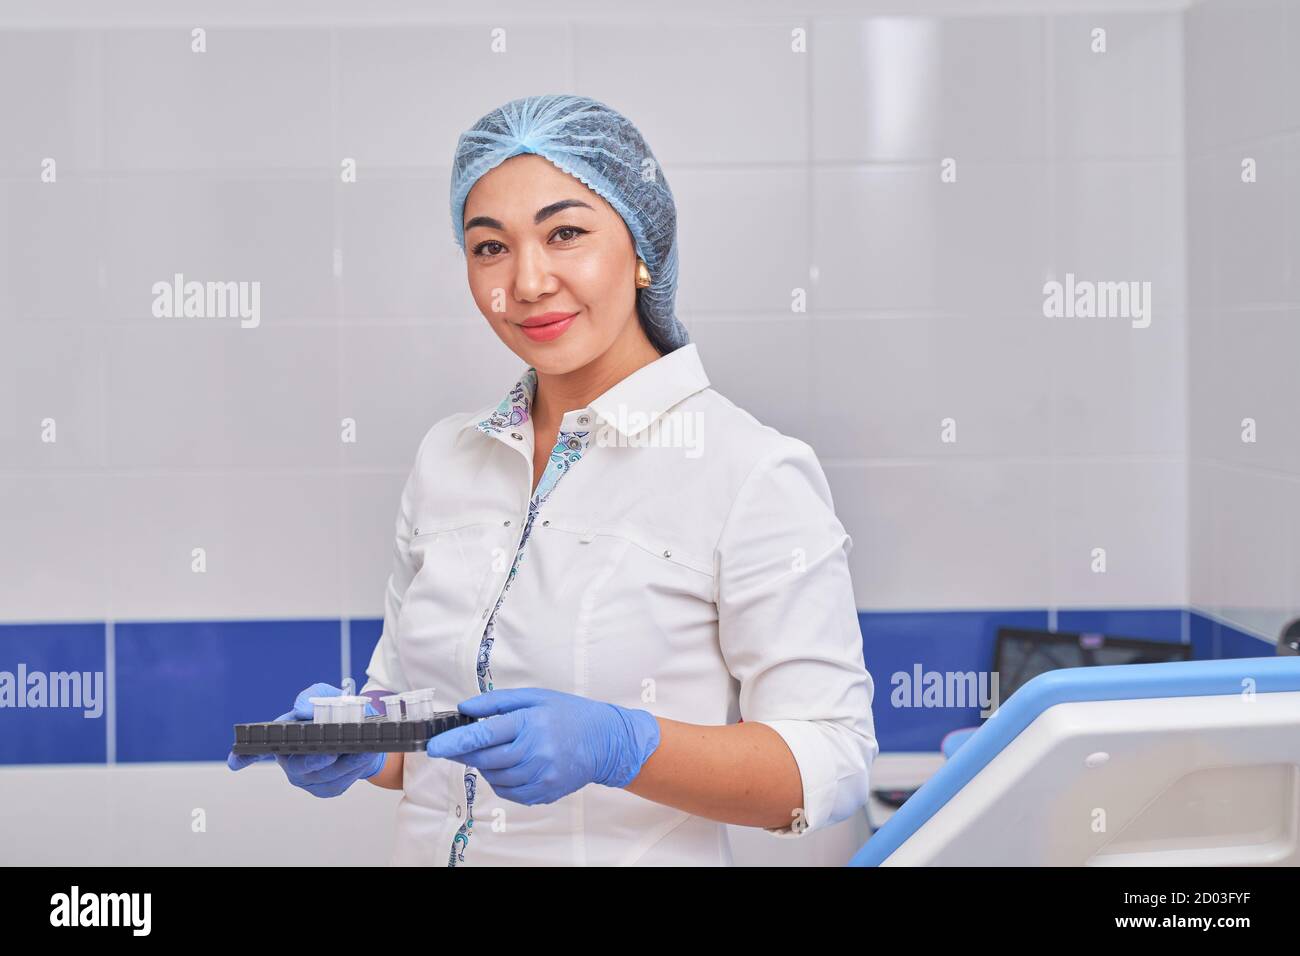 Asiatische Frauenärztin in einem weißen Mantel mit Tests Stockfoto